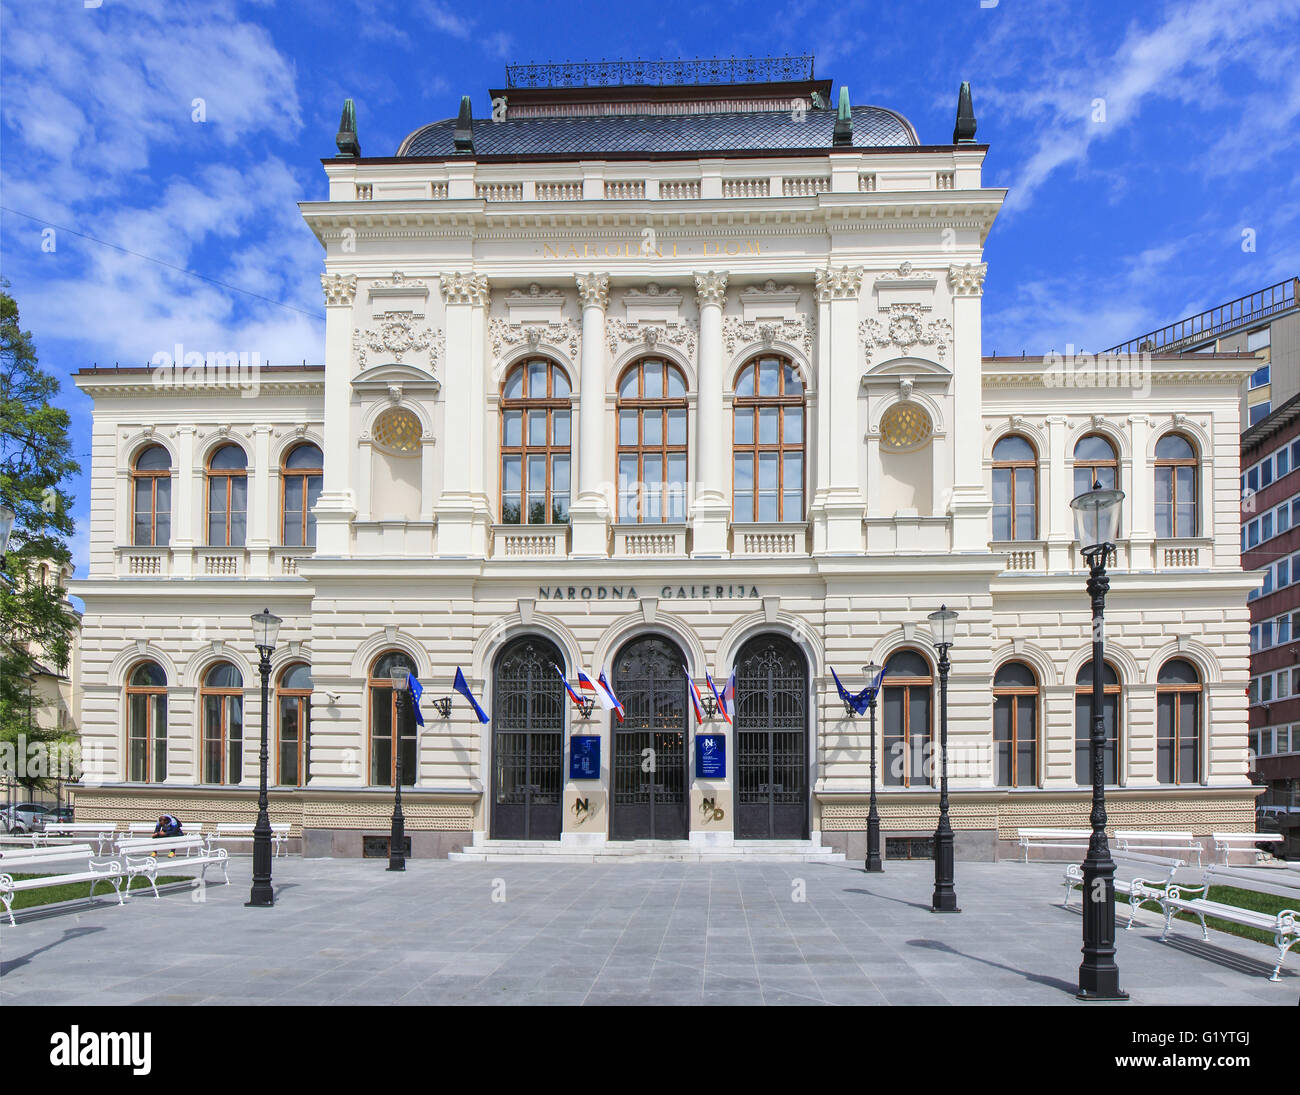 National gallery in Ljubljana, Slovenia Stock Photo